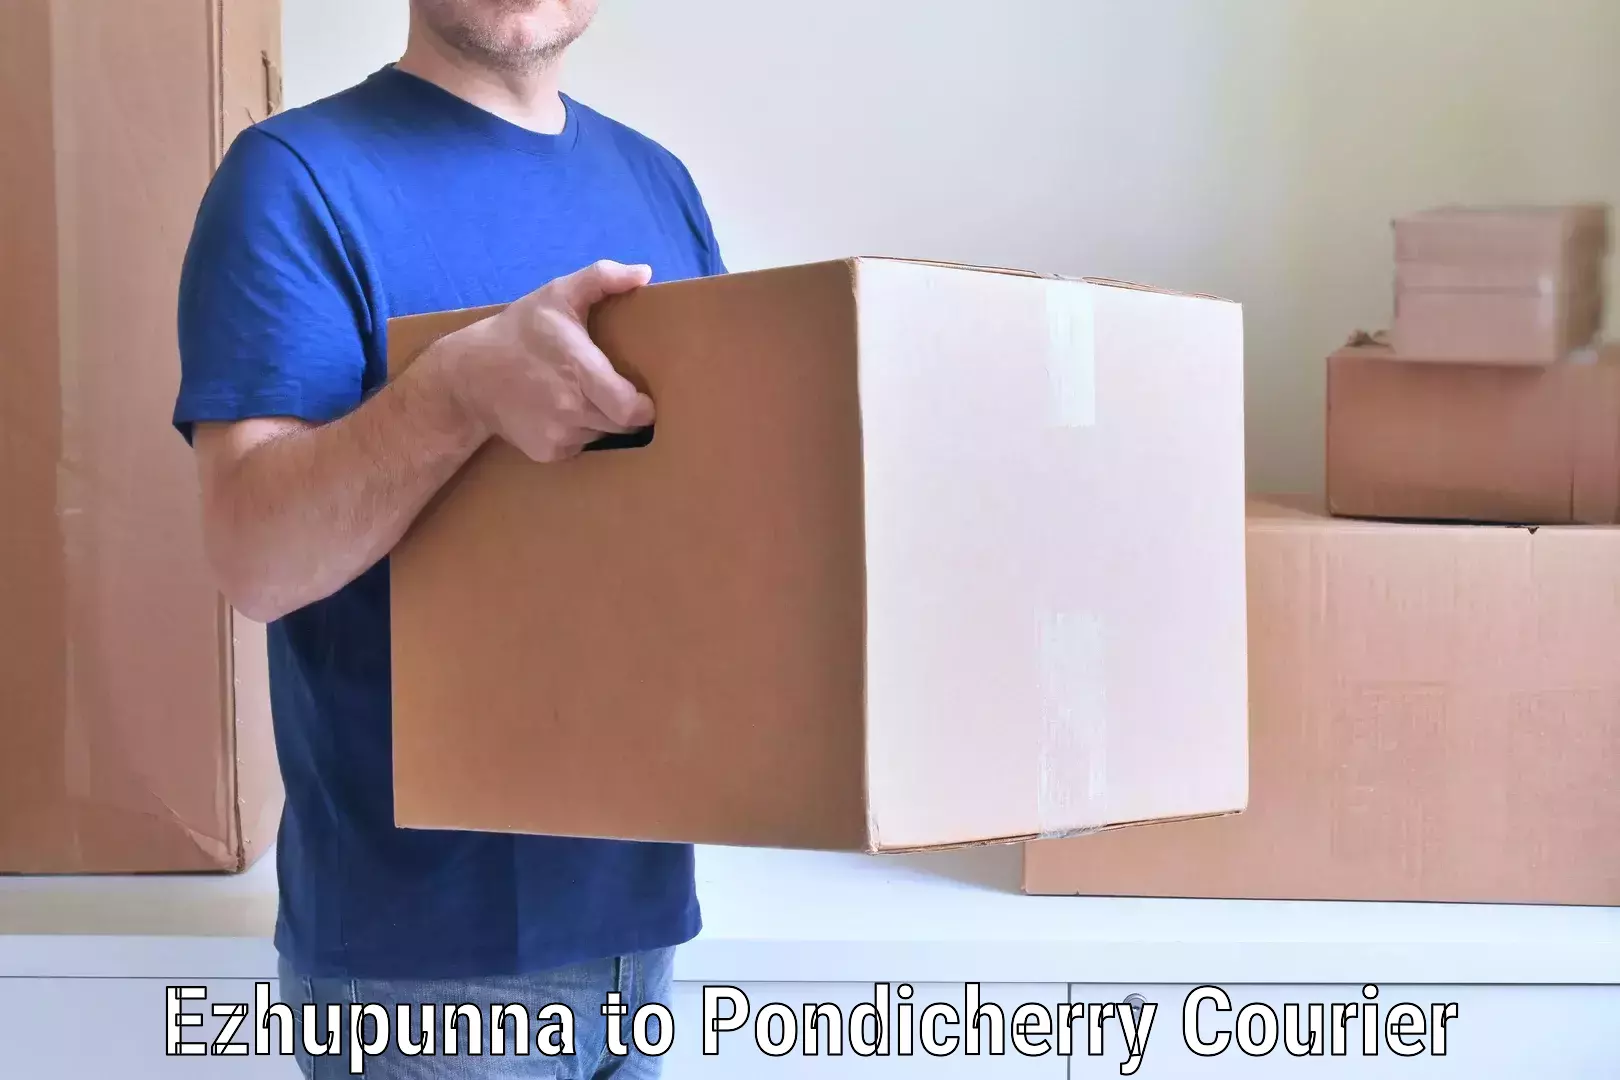 Furniture transport specialists Ezhupunna to Pondicherry